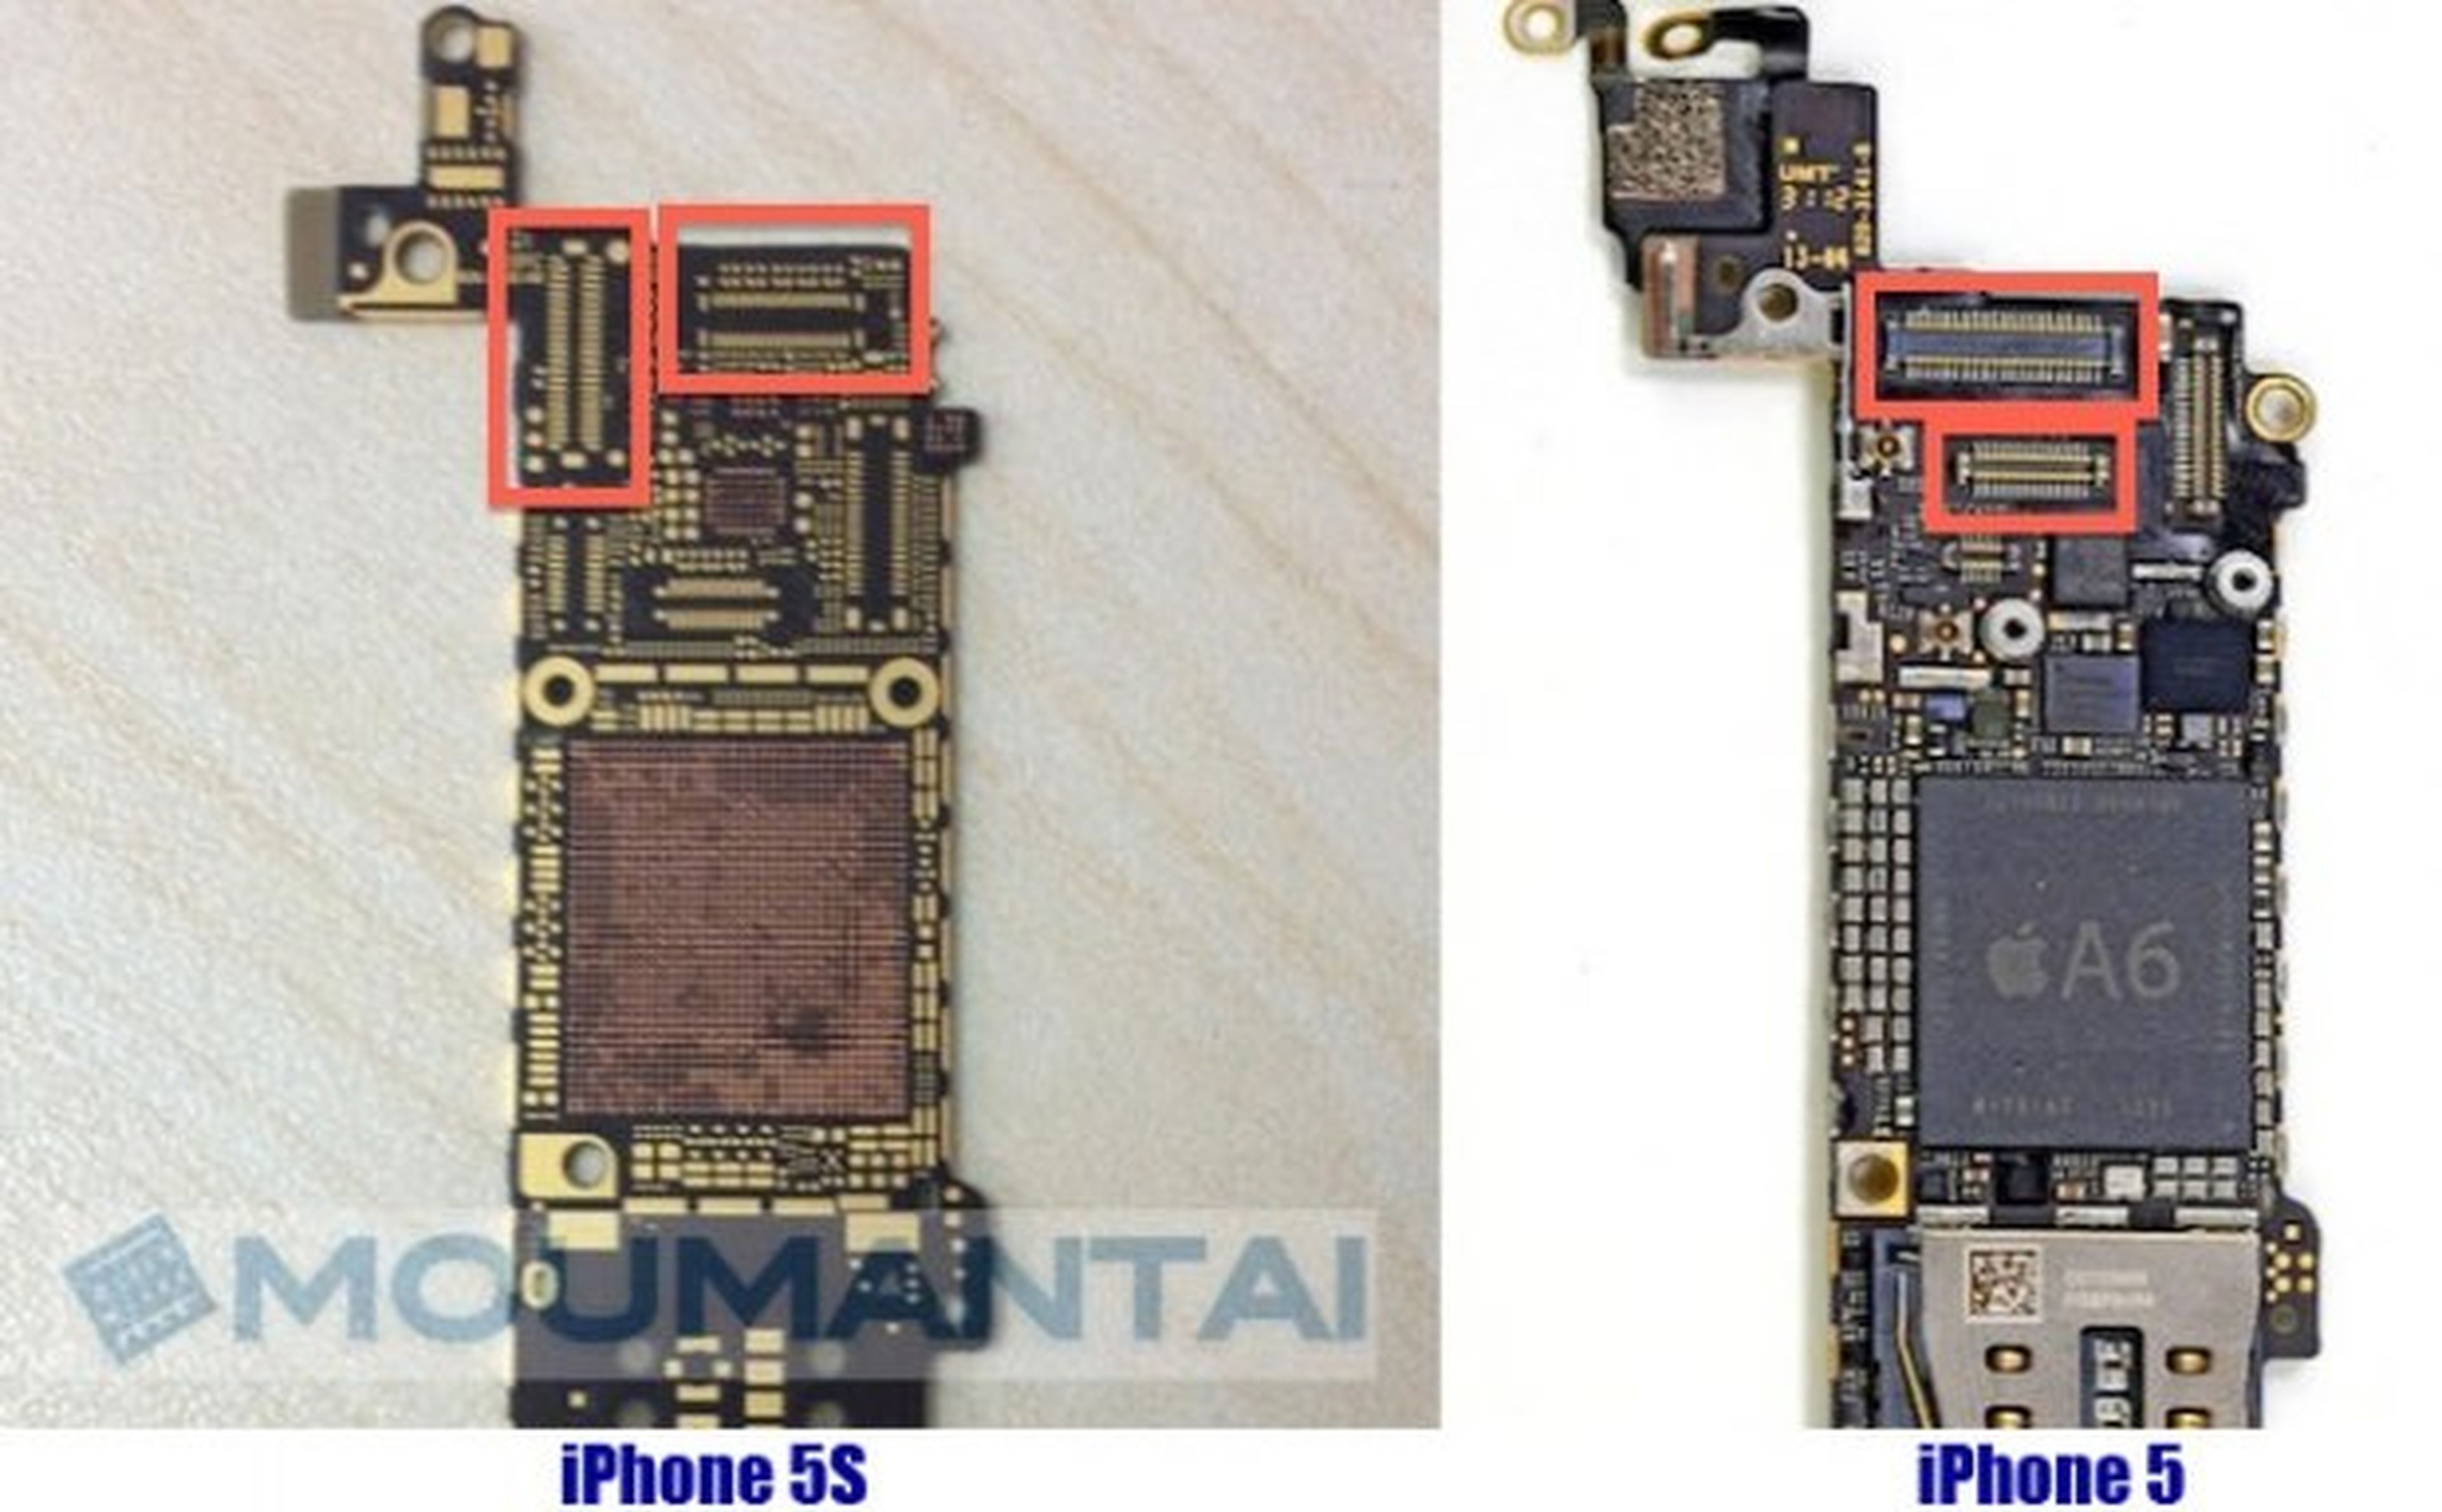 Iphone 5S versus Iphone 5